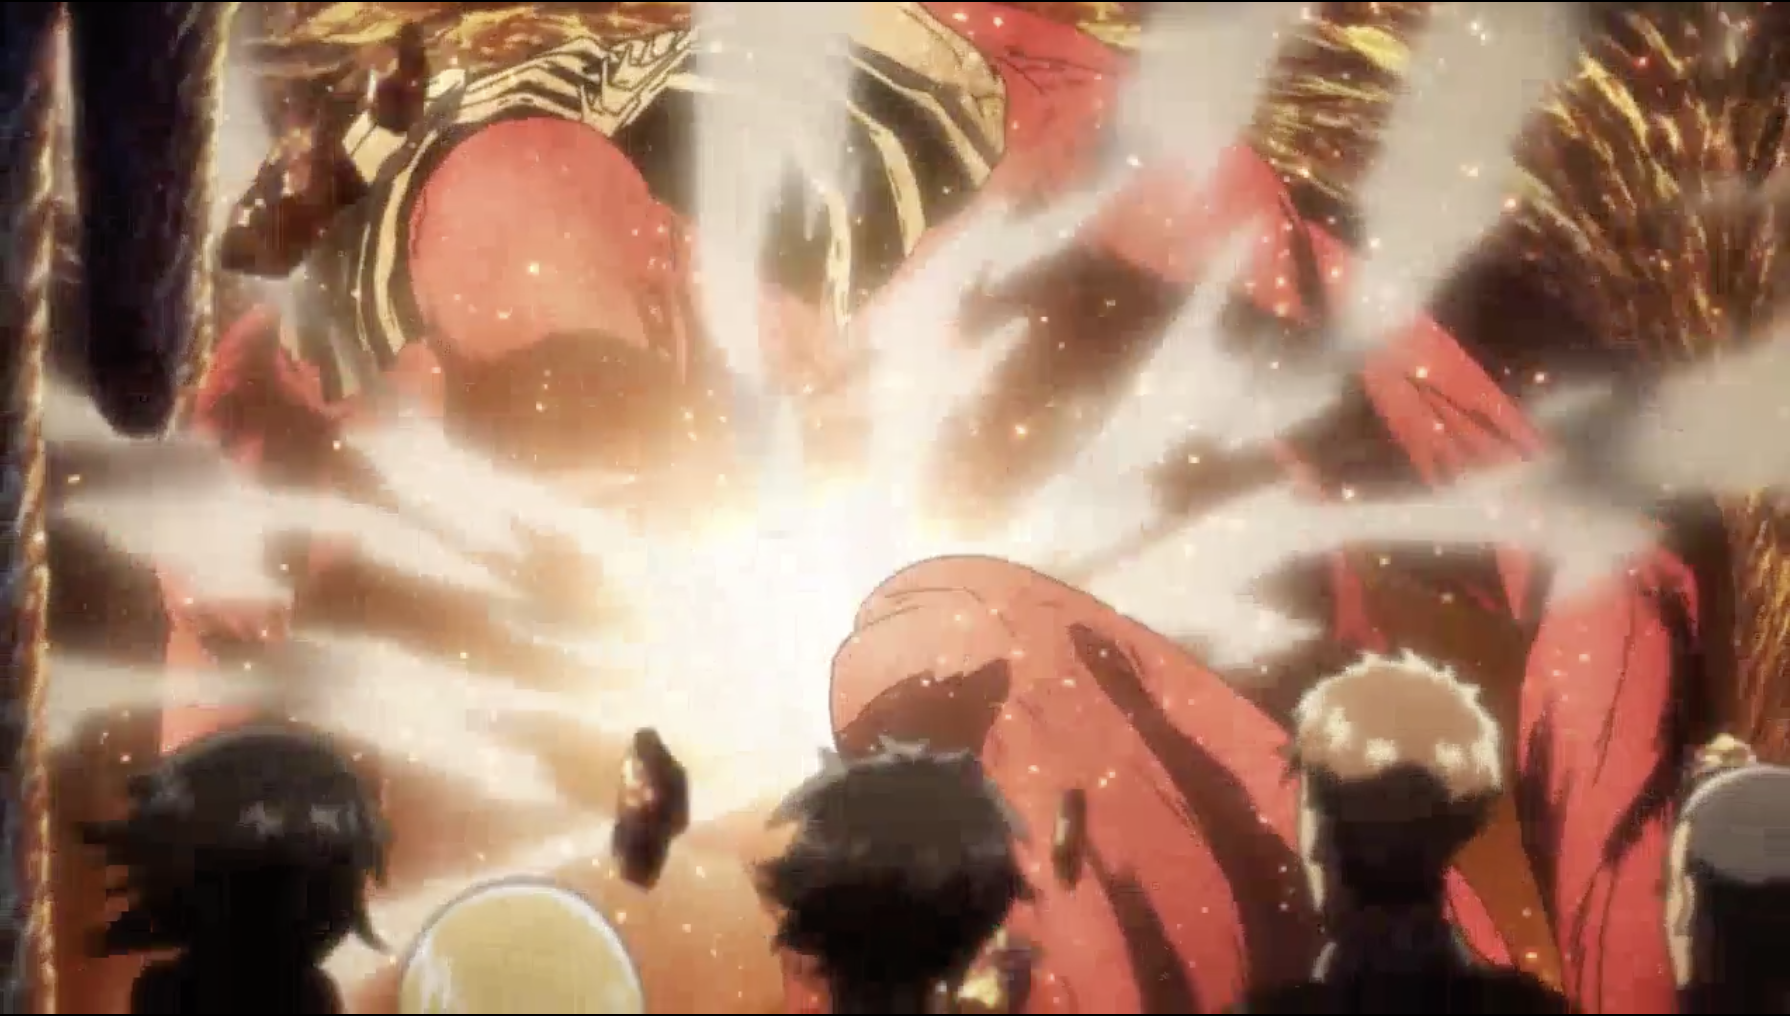 Shingeki no Kyojin Season 3 (Attack on Titan Season 3) 